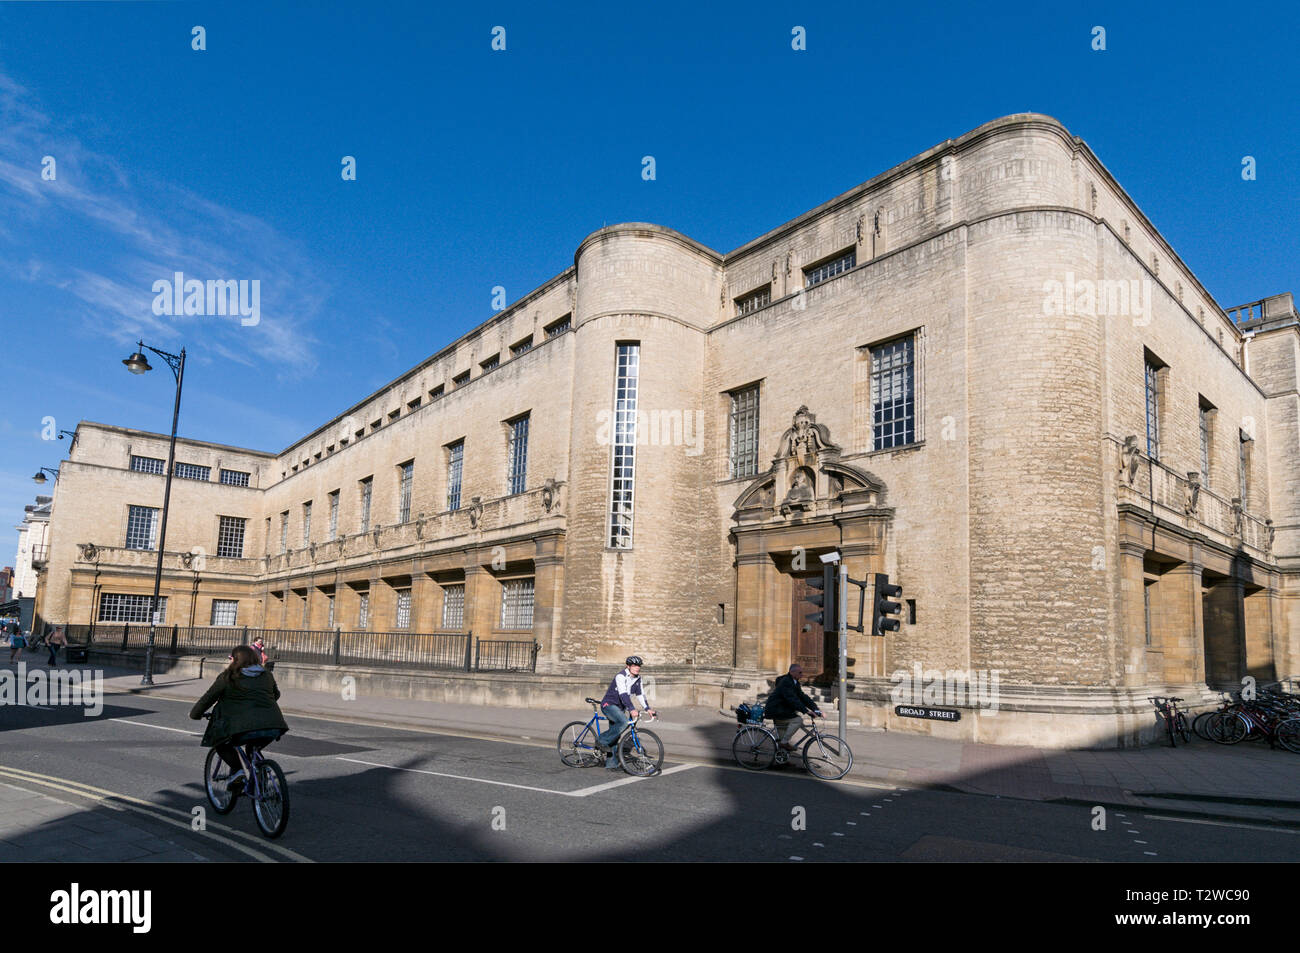 Le Weston bibliothèque fait partie de la Bodleian Library, la principale bibliothèque de recherche de l'Université d'Oxford dans Broad Street à Oxford, Oxfordshire, Brit Banque D'Images